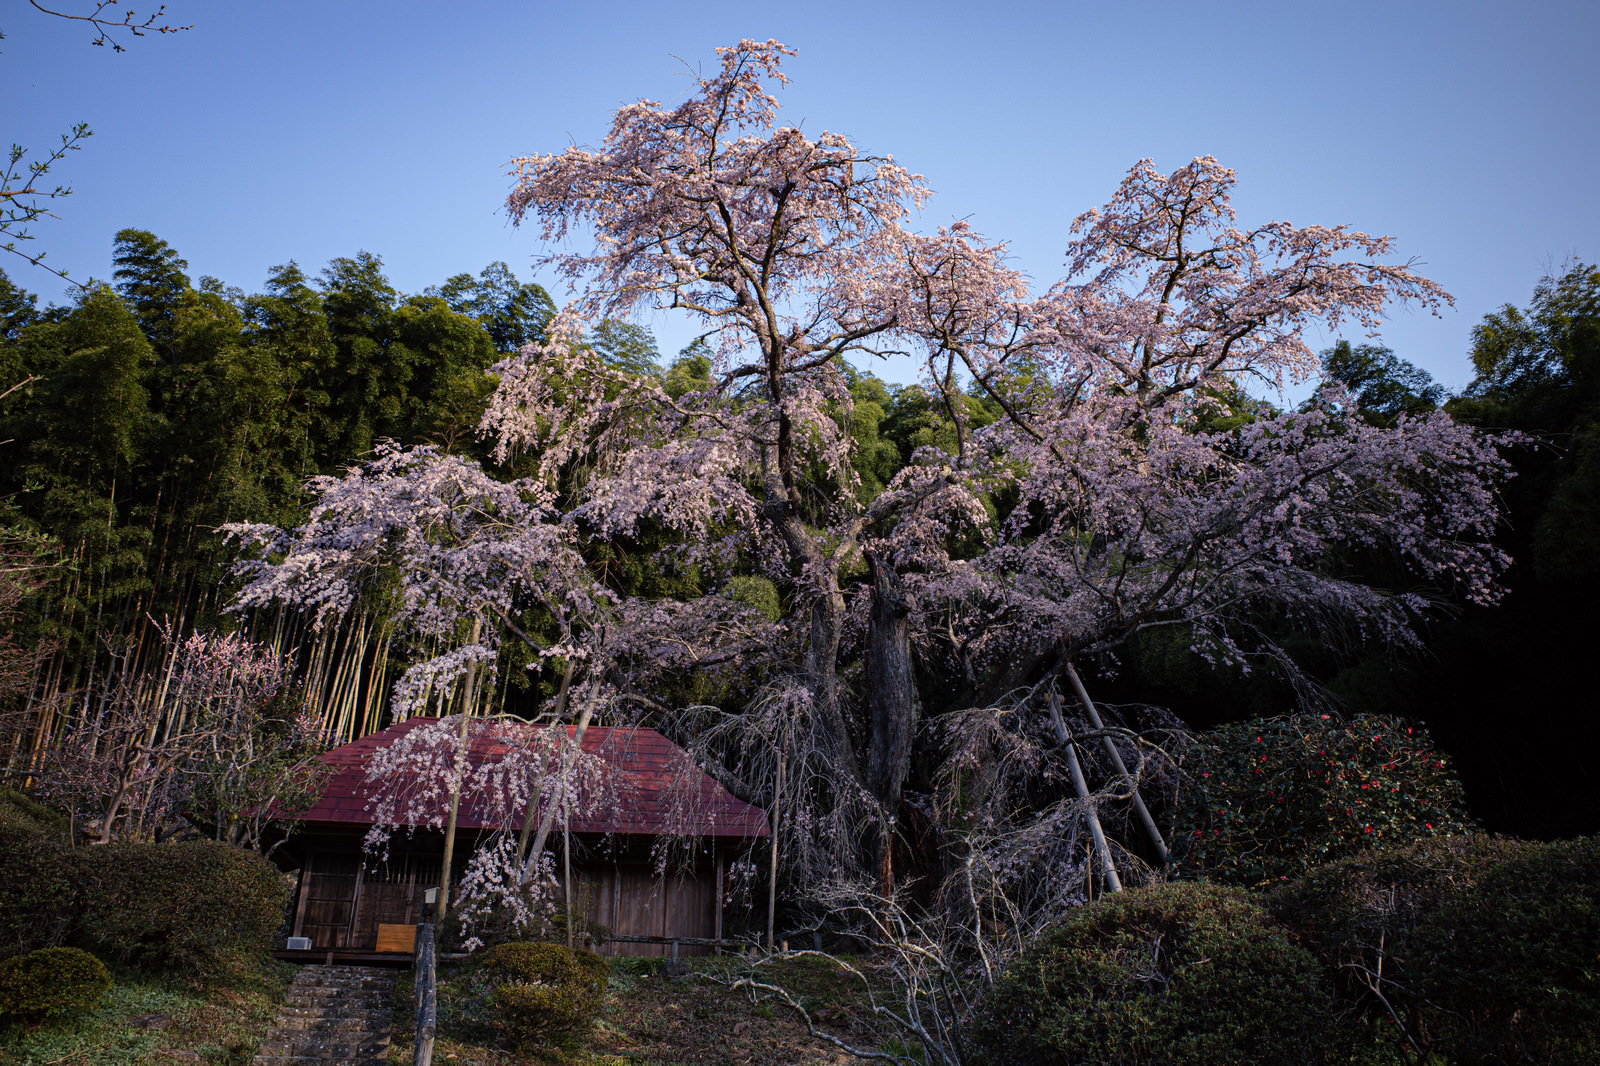 「満開の雪村桜の様子 | フリー素材のぱくたそ」の写真